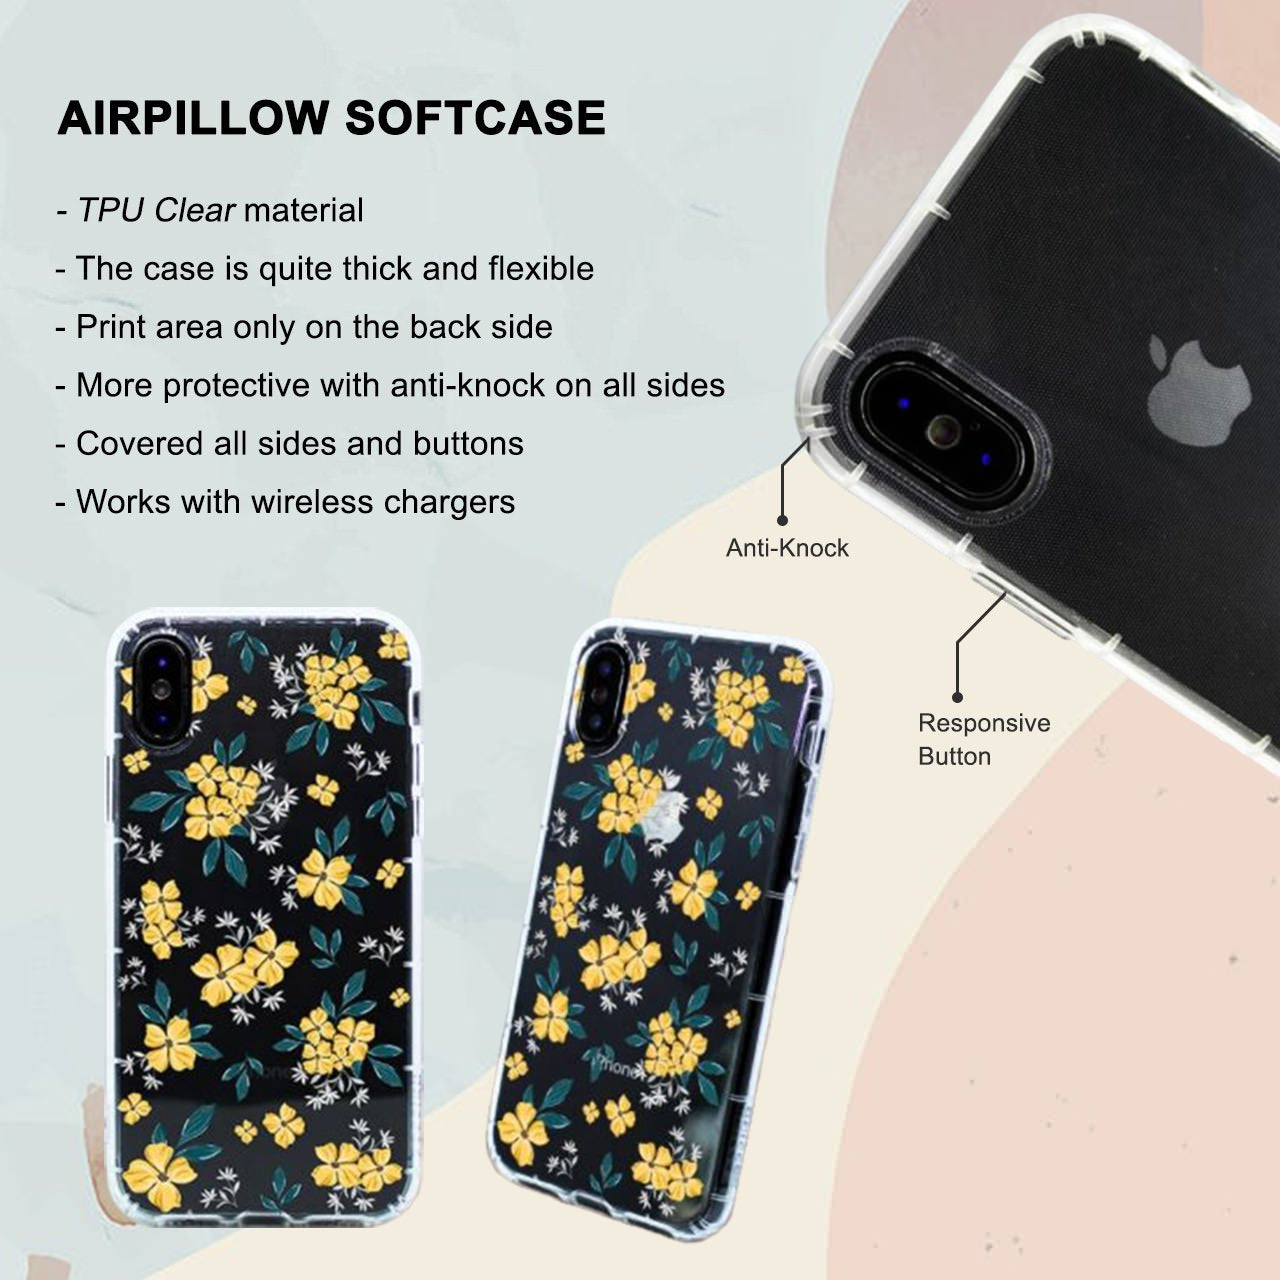 Cute Stripes iPhone 6 / 6s Plus Case